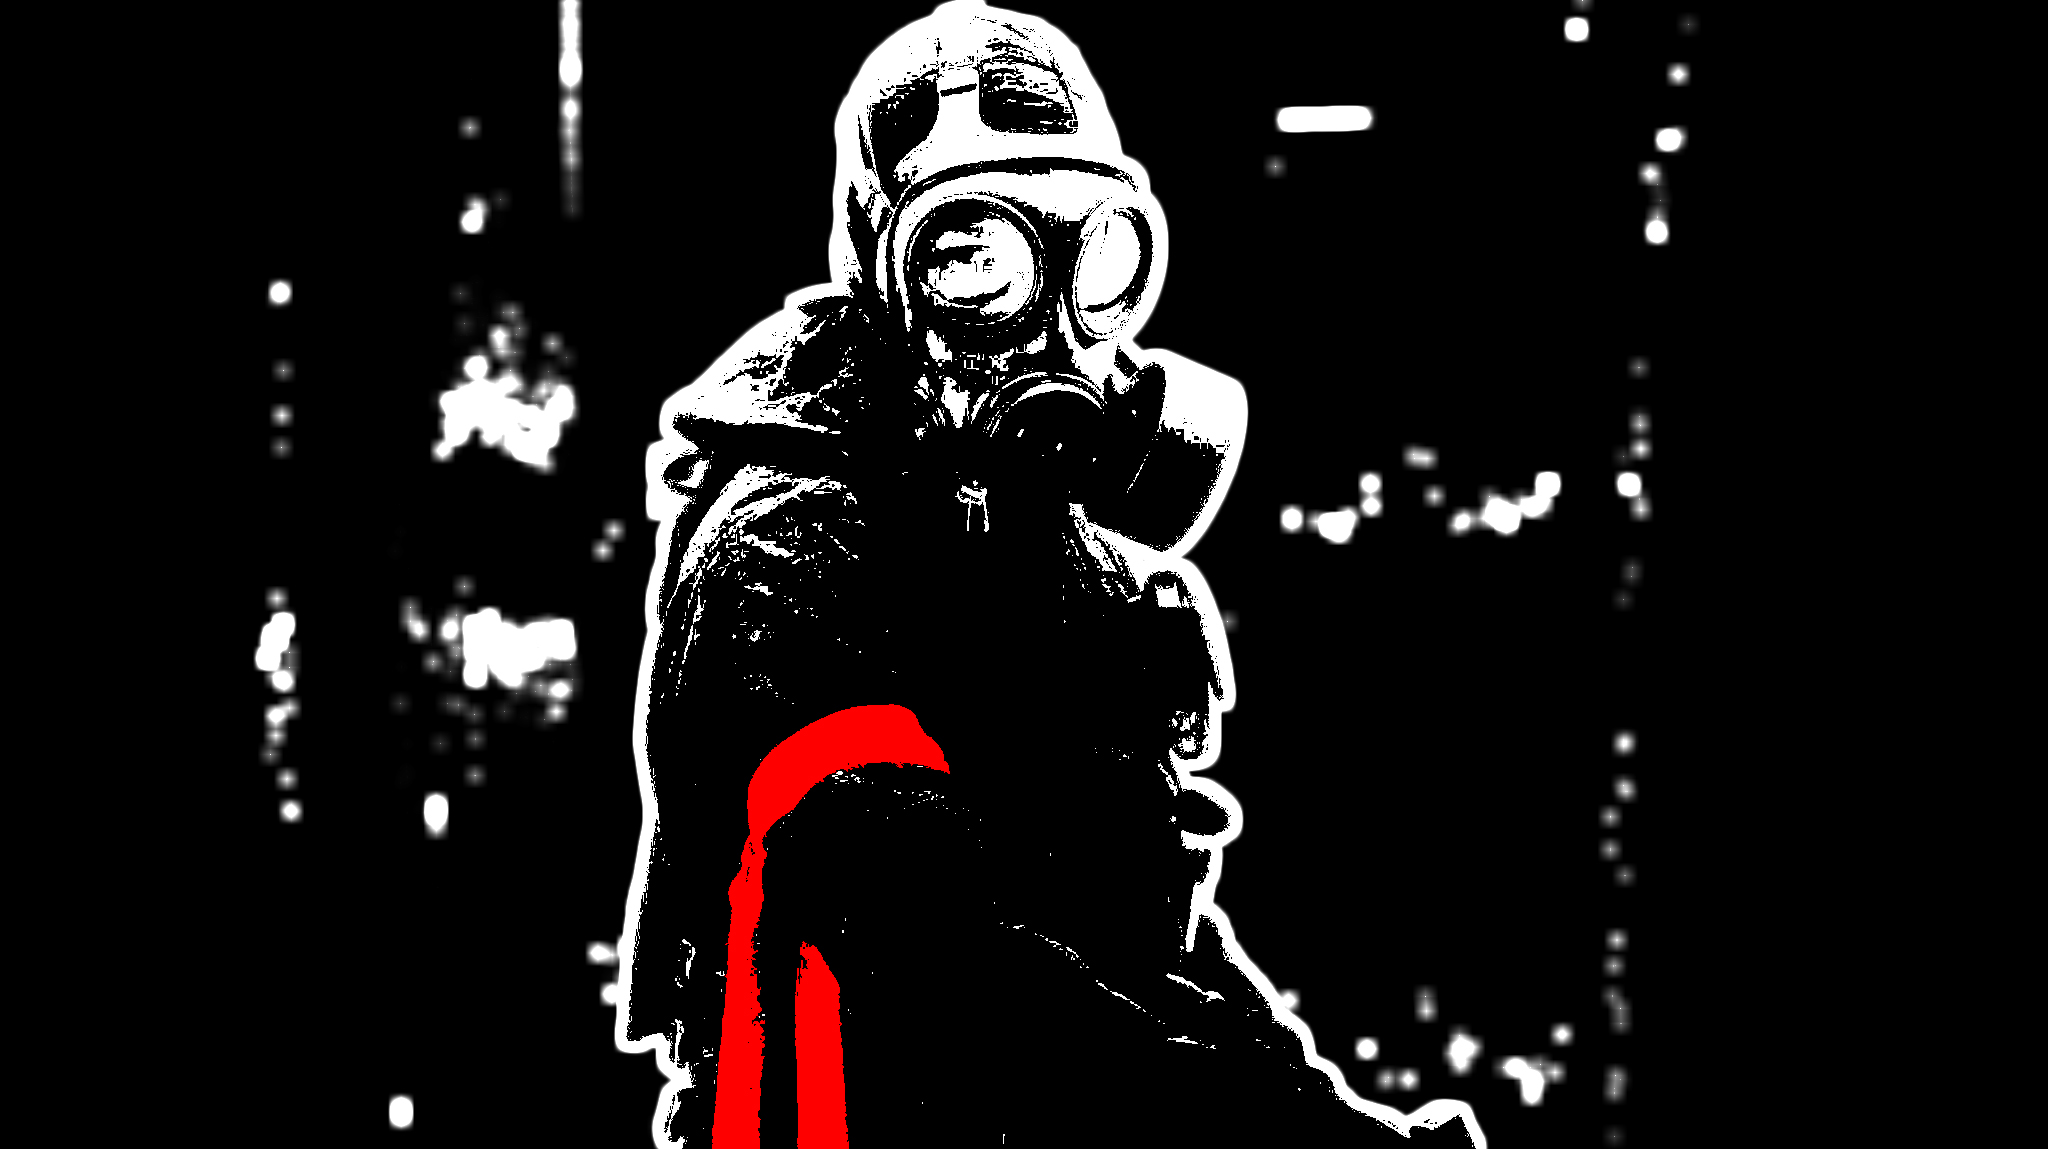 dark, anarchy, gas mask